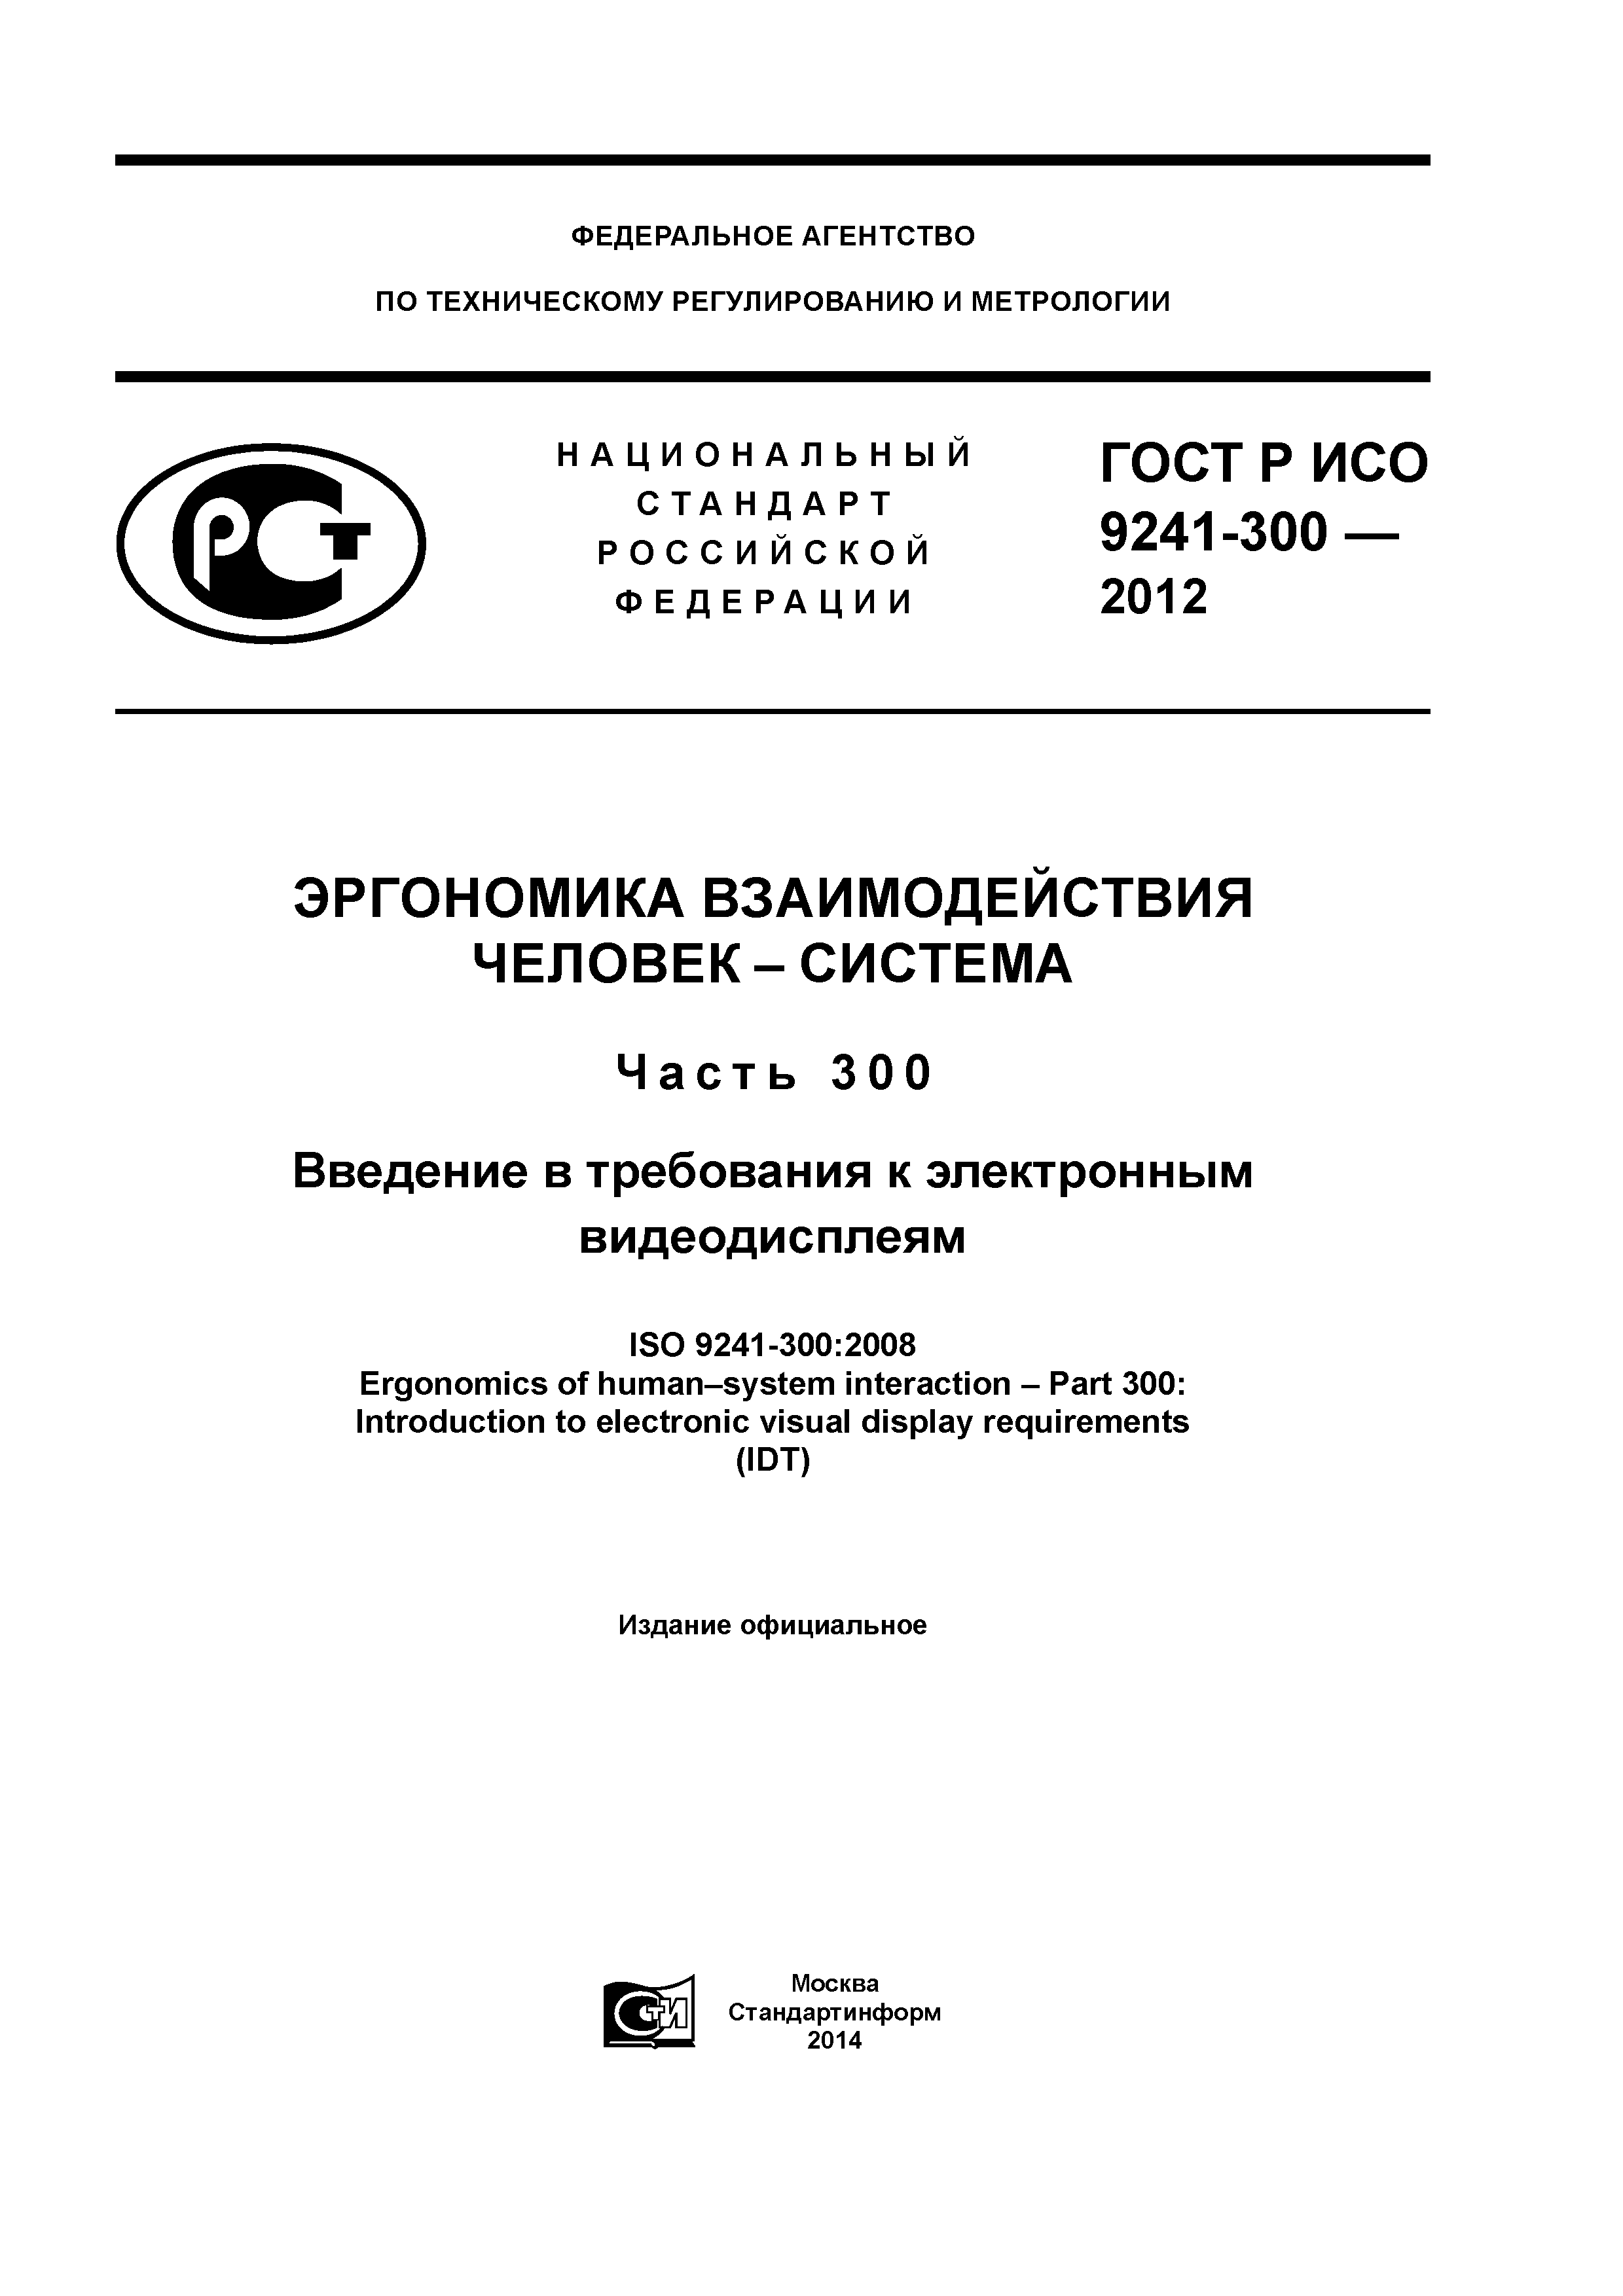 ГОСТ Р ИСО 9241-300-2012